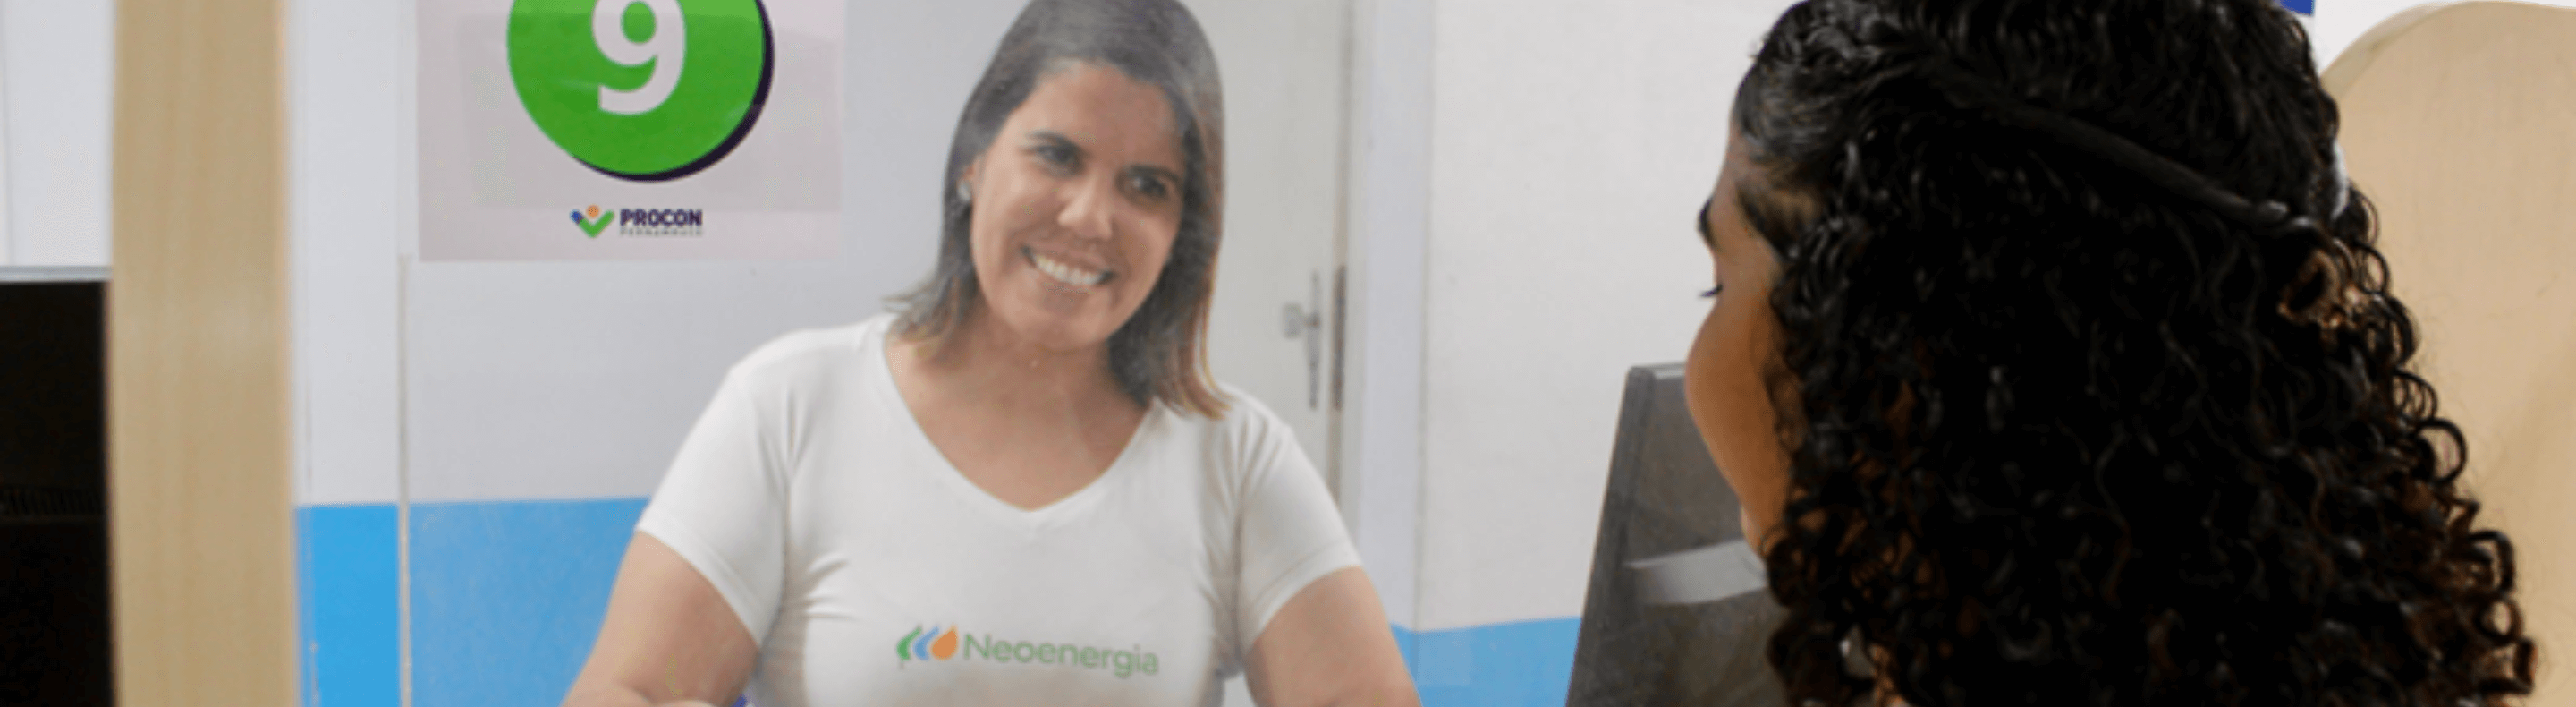 Colaboradora da Neoenergia Pernambuco com uma cliente no Procon